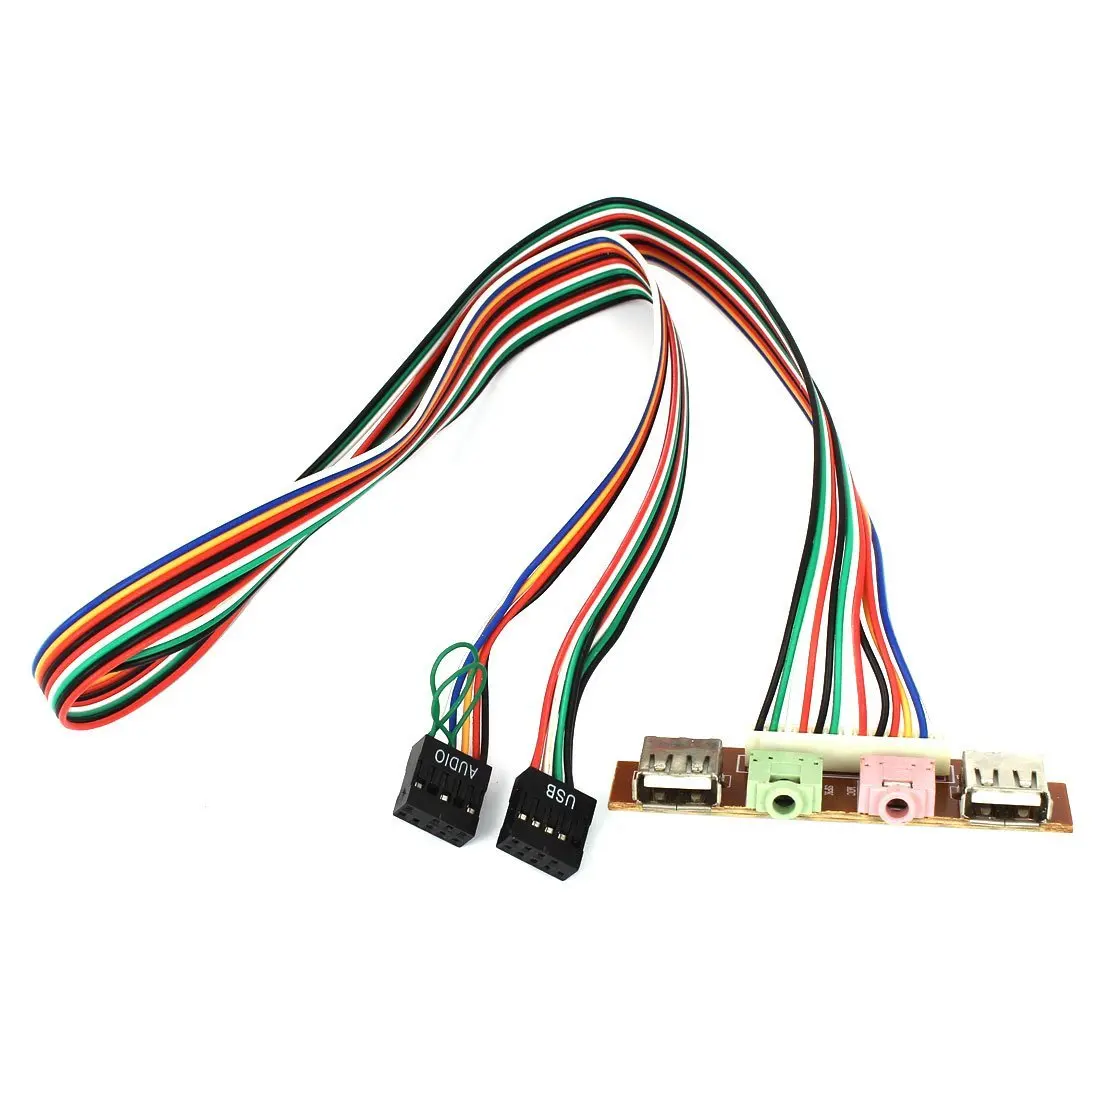 Audio на пк. Ac97 разъем передней панели удлинитель. Разъем материнской передней панели ПК USB 3.0. Панель 3.5 для системного блока USB Audio. Панель USB Audio pc1.